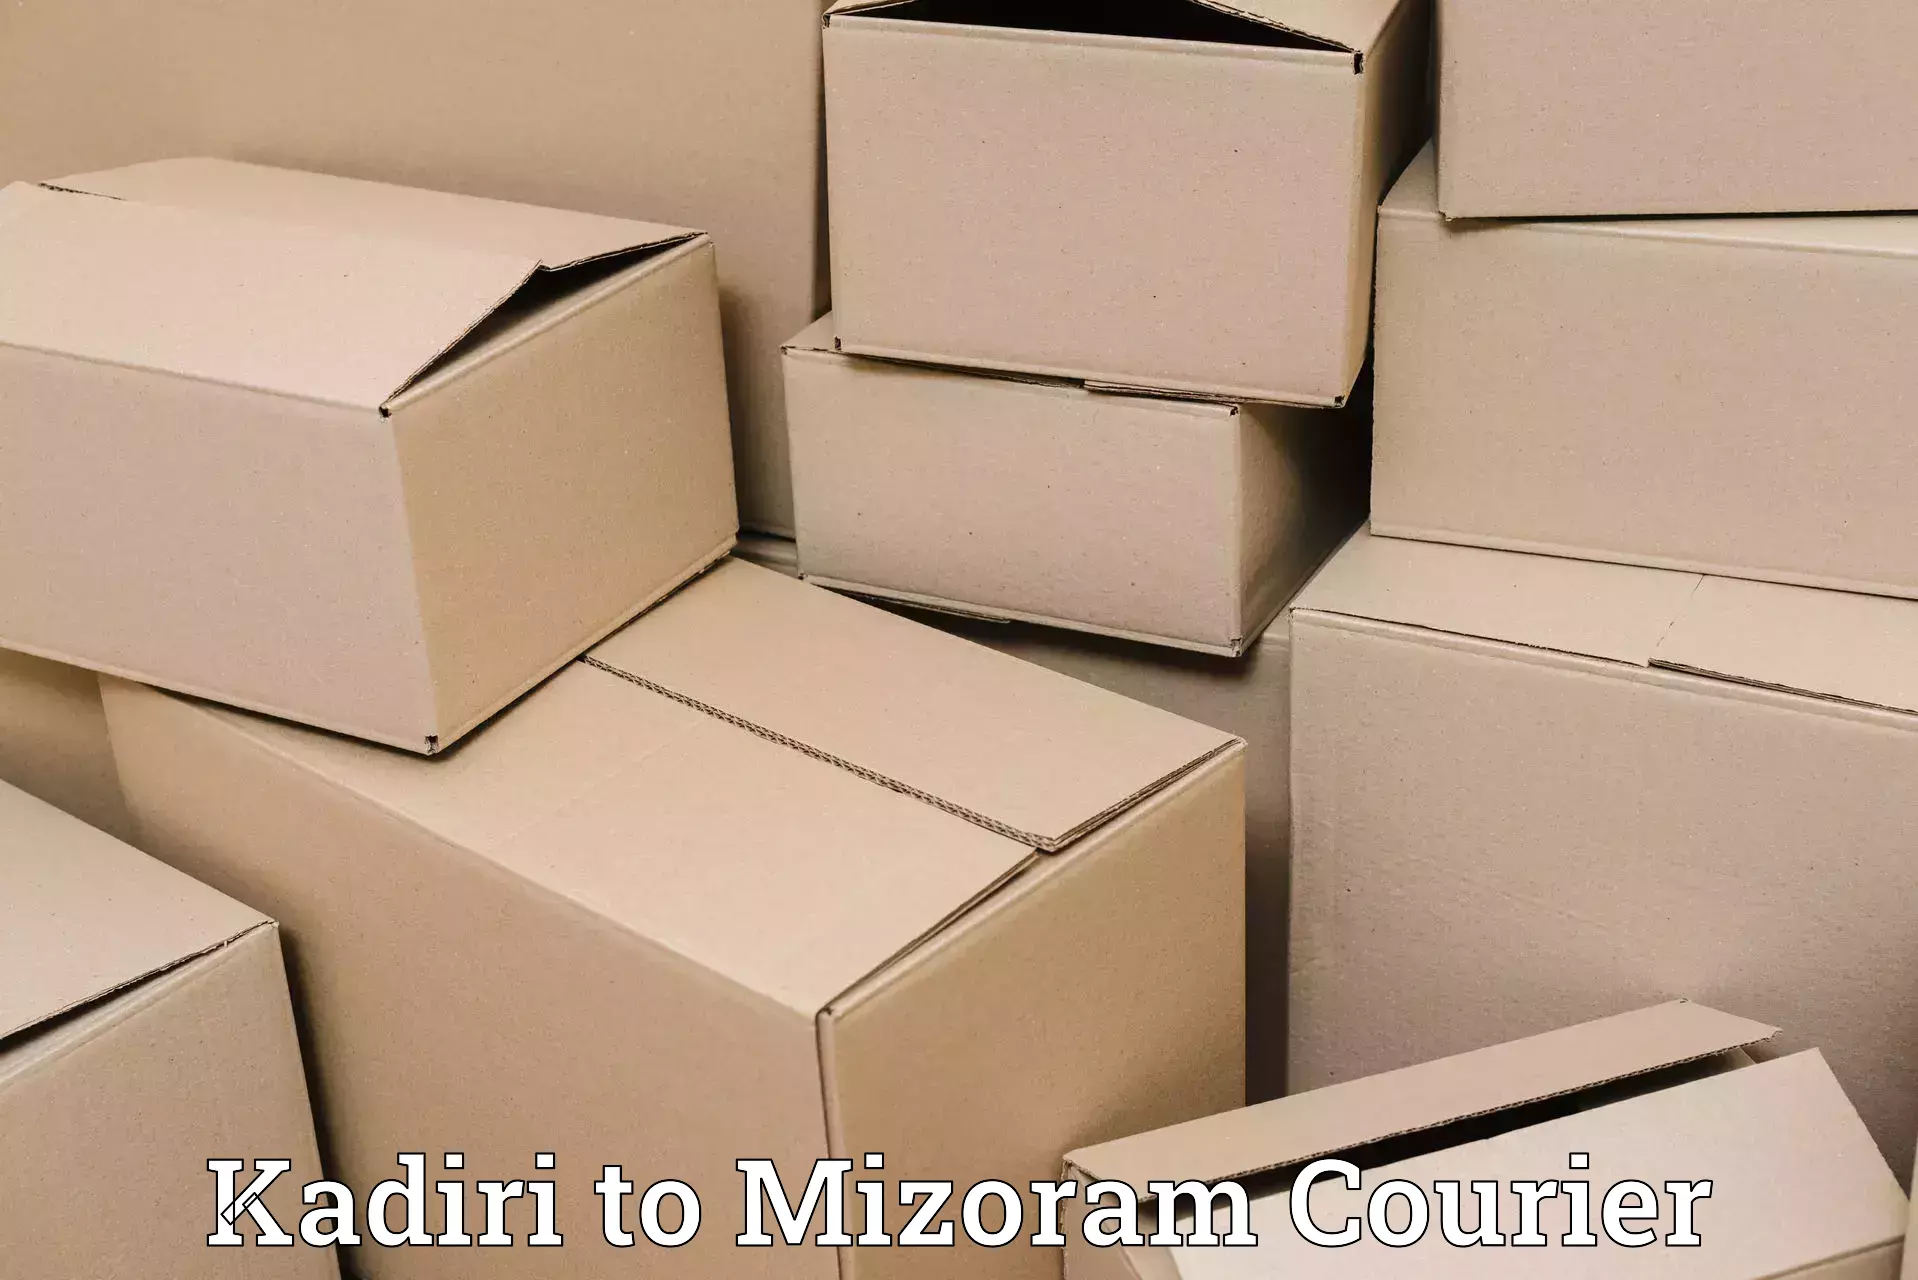 Flexible delivery scheduling Kadiri to Mizoram